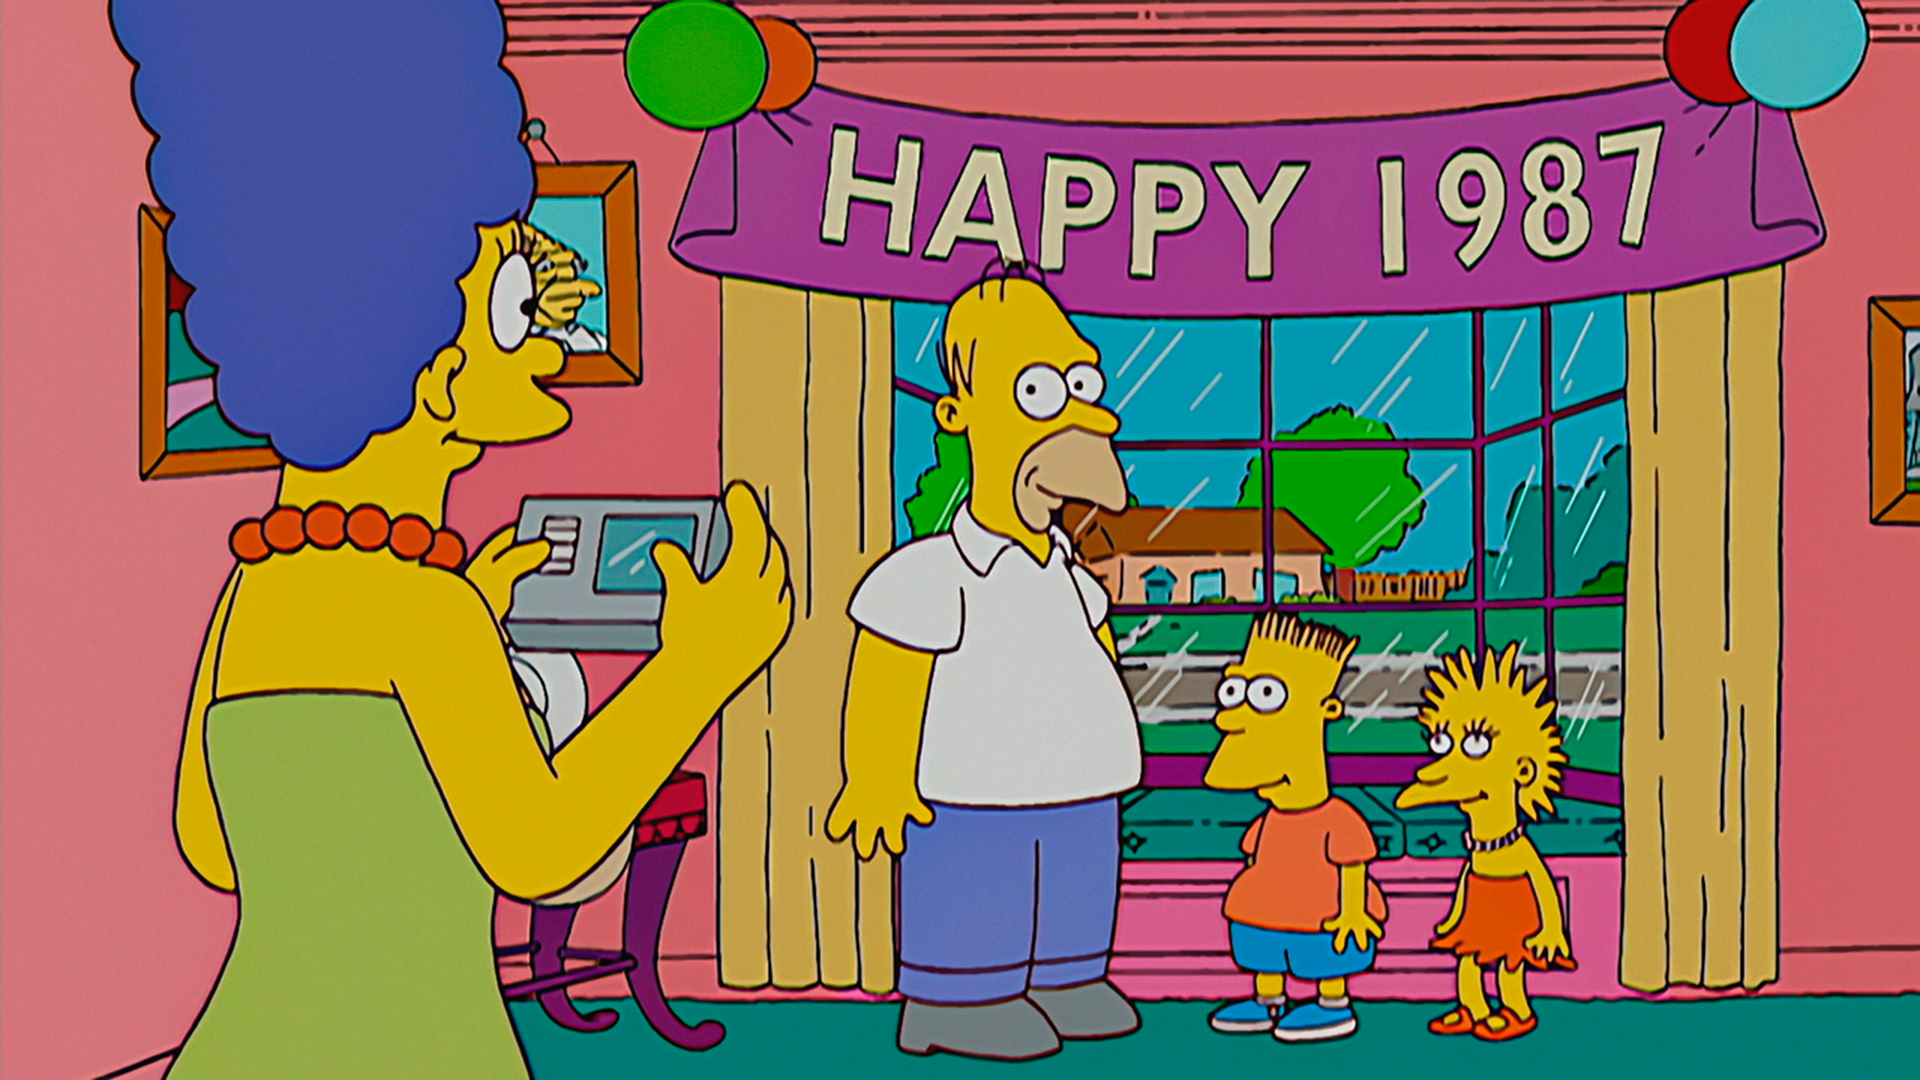 La nueva temporada de “Los Simpson” explicará como han predicho el futuro (Foto: Los Simpson)